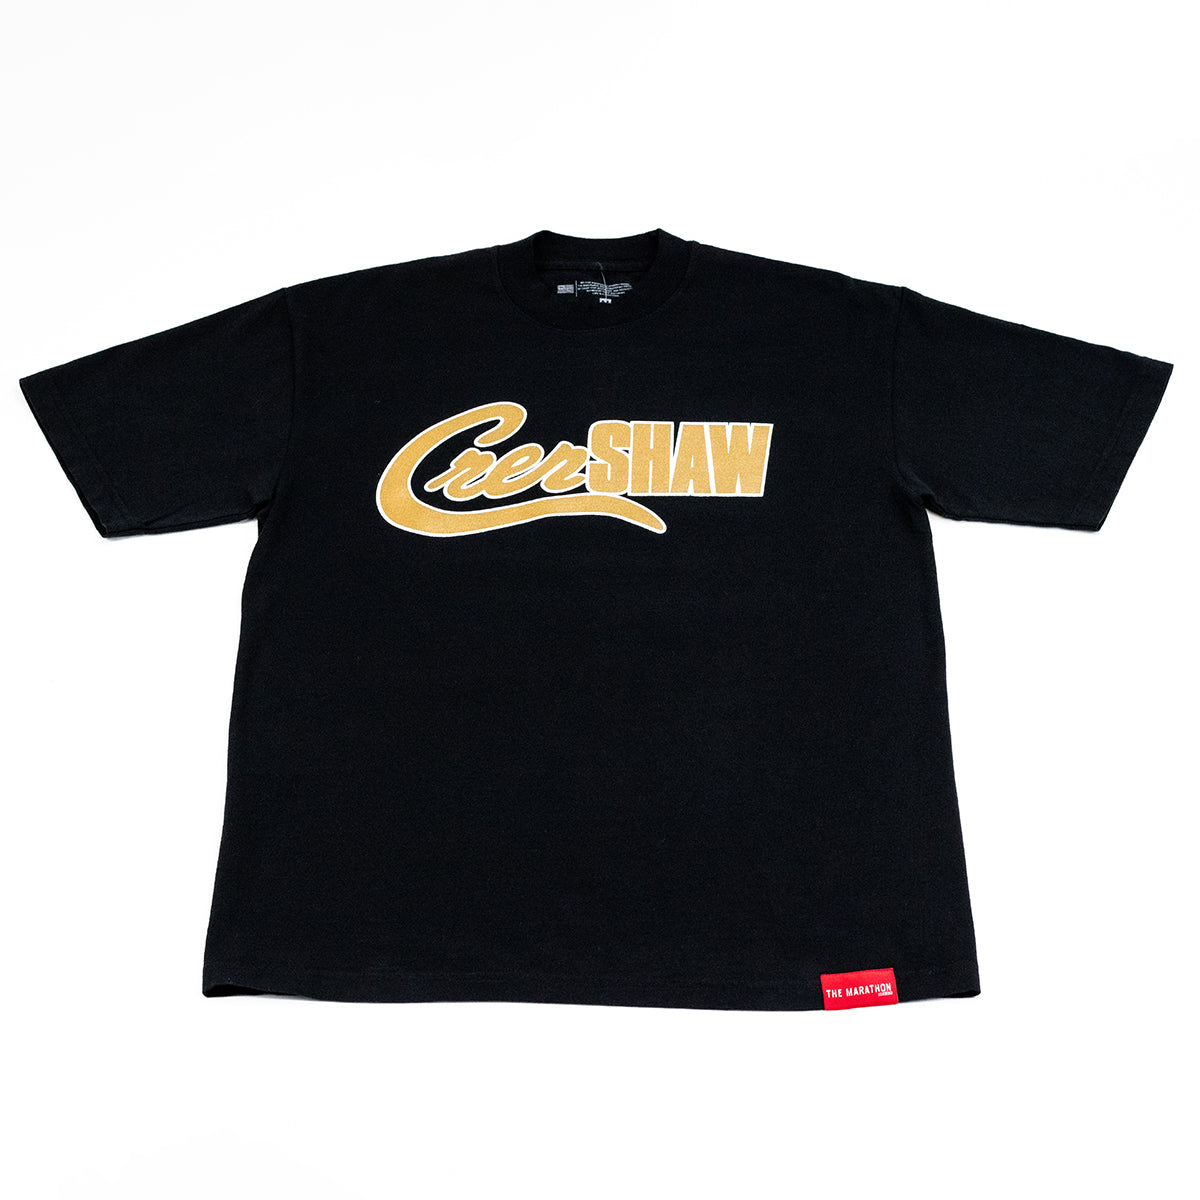 Crenshaw Mashup T-shirt - Black/Tan